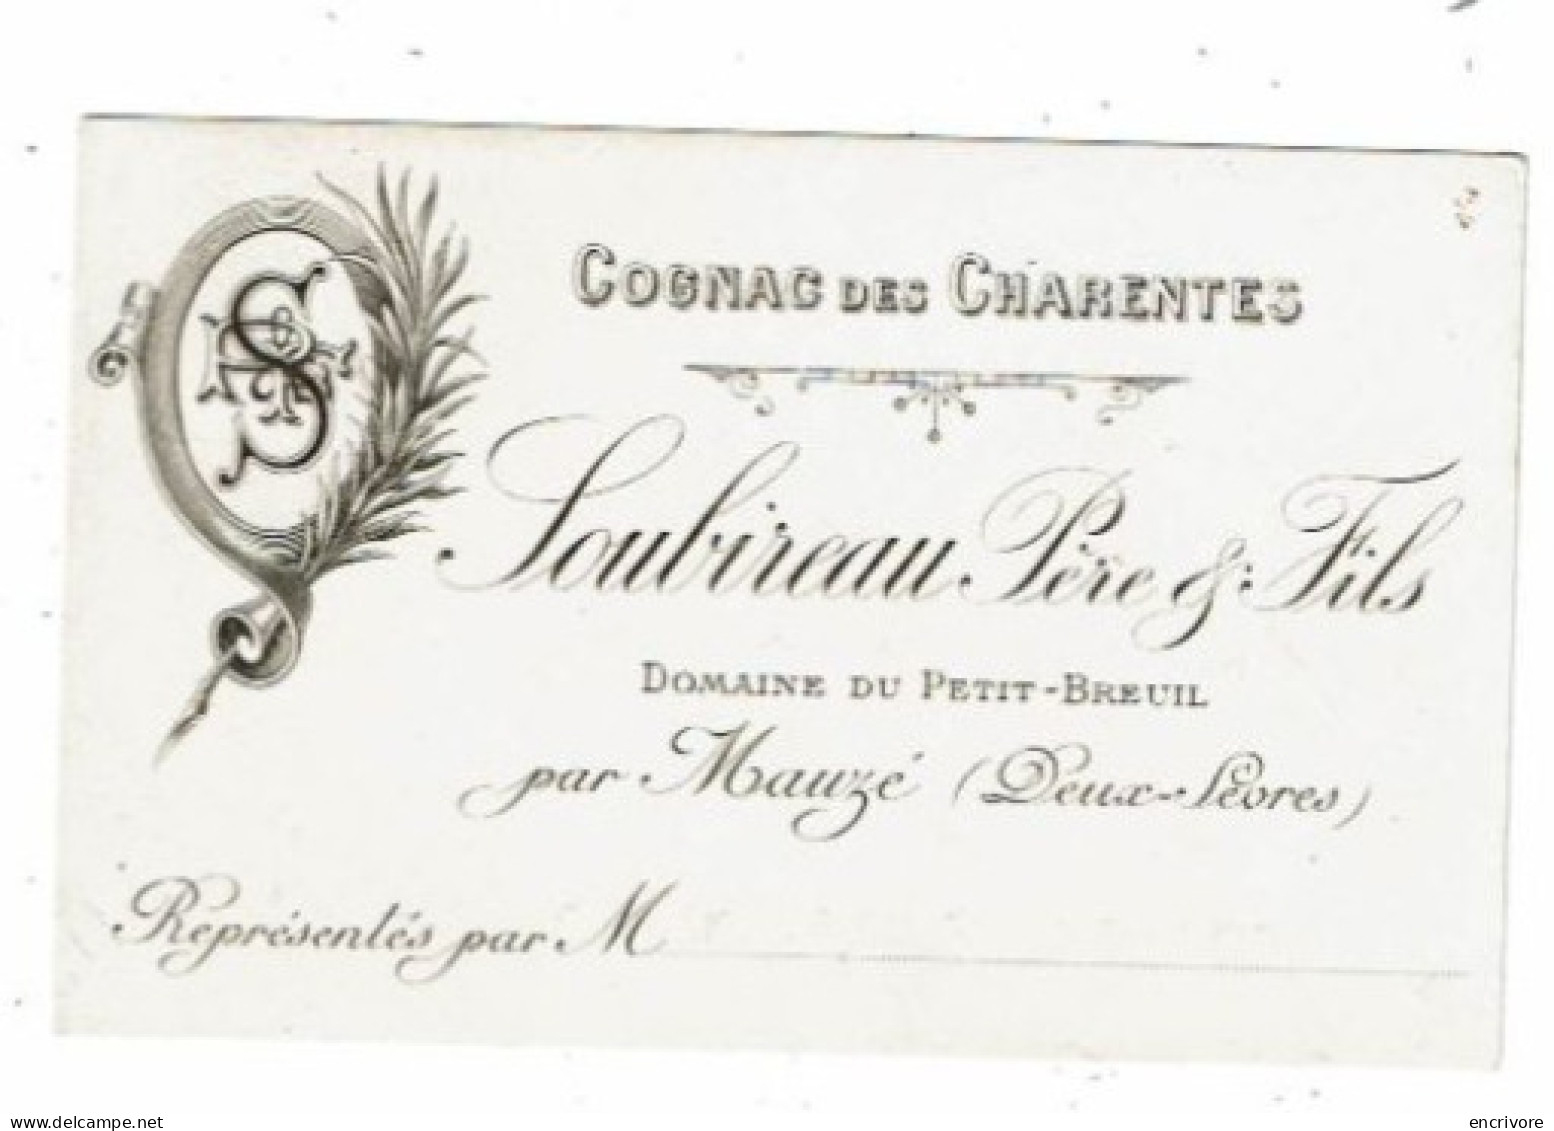 Carte De Visite SOUBIREAU PERE FILS Domaine Du Petit Breuil Mauzé COGNAC DES CHARENTES - Visiting Cards